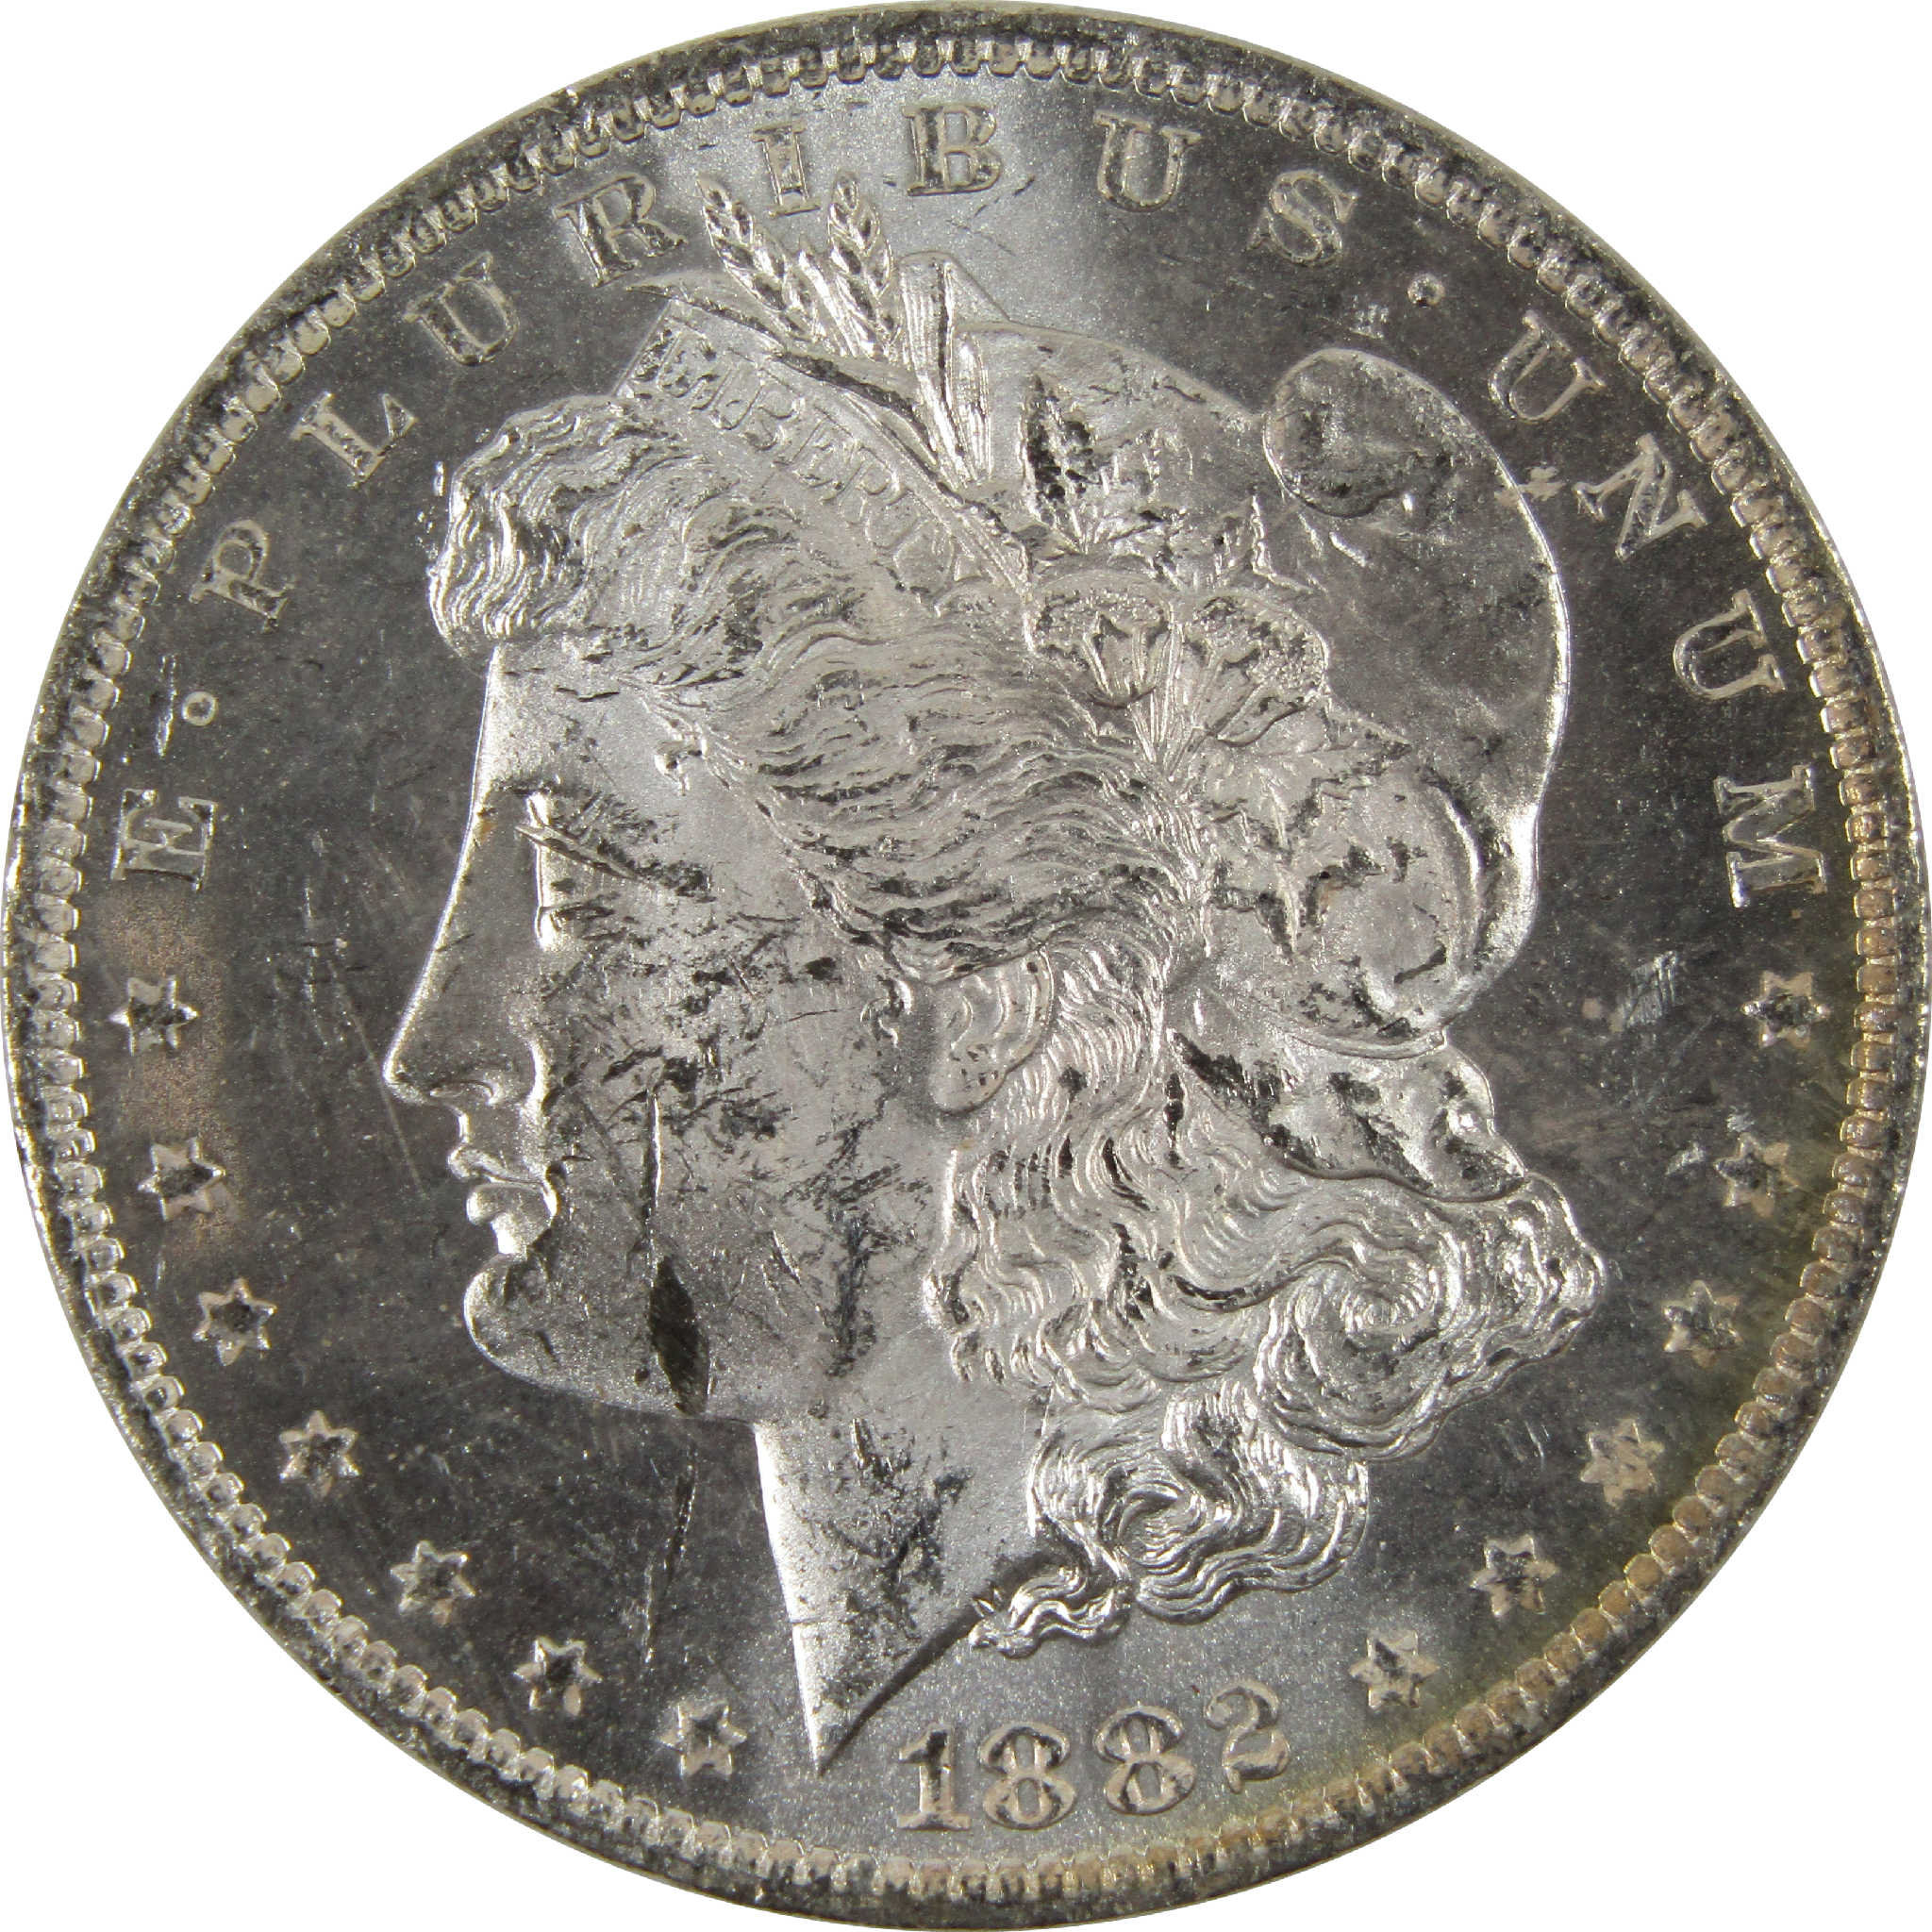 1882 O Morgan Dollar BU Uncirculated 90% Silver $1 Coin SKU:I8918 - Morgan coin - Morgan silver dollar - Morgan silver dollar for sale - Profile Coins &amp; Collectibles